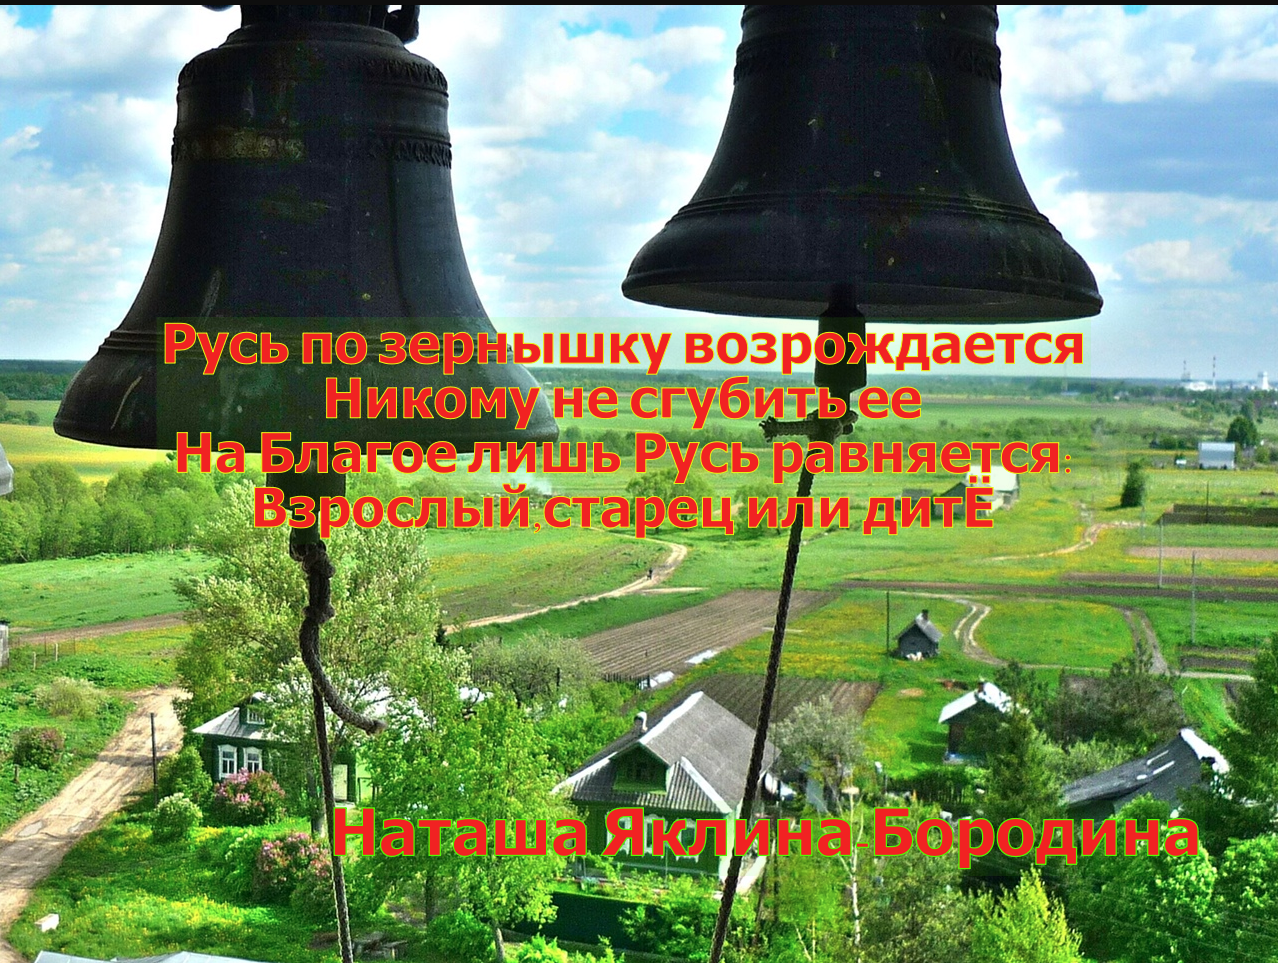 Покажи колокола. Колокольный звон колокол Благовест. Колокольный звон Борисоглебский монастырь. Колокола на колокольне.